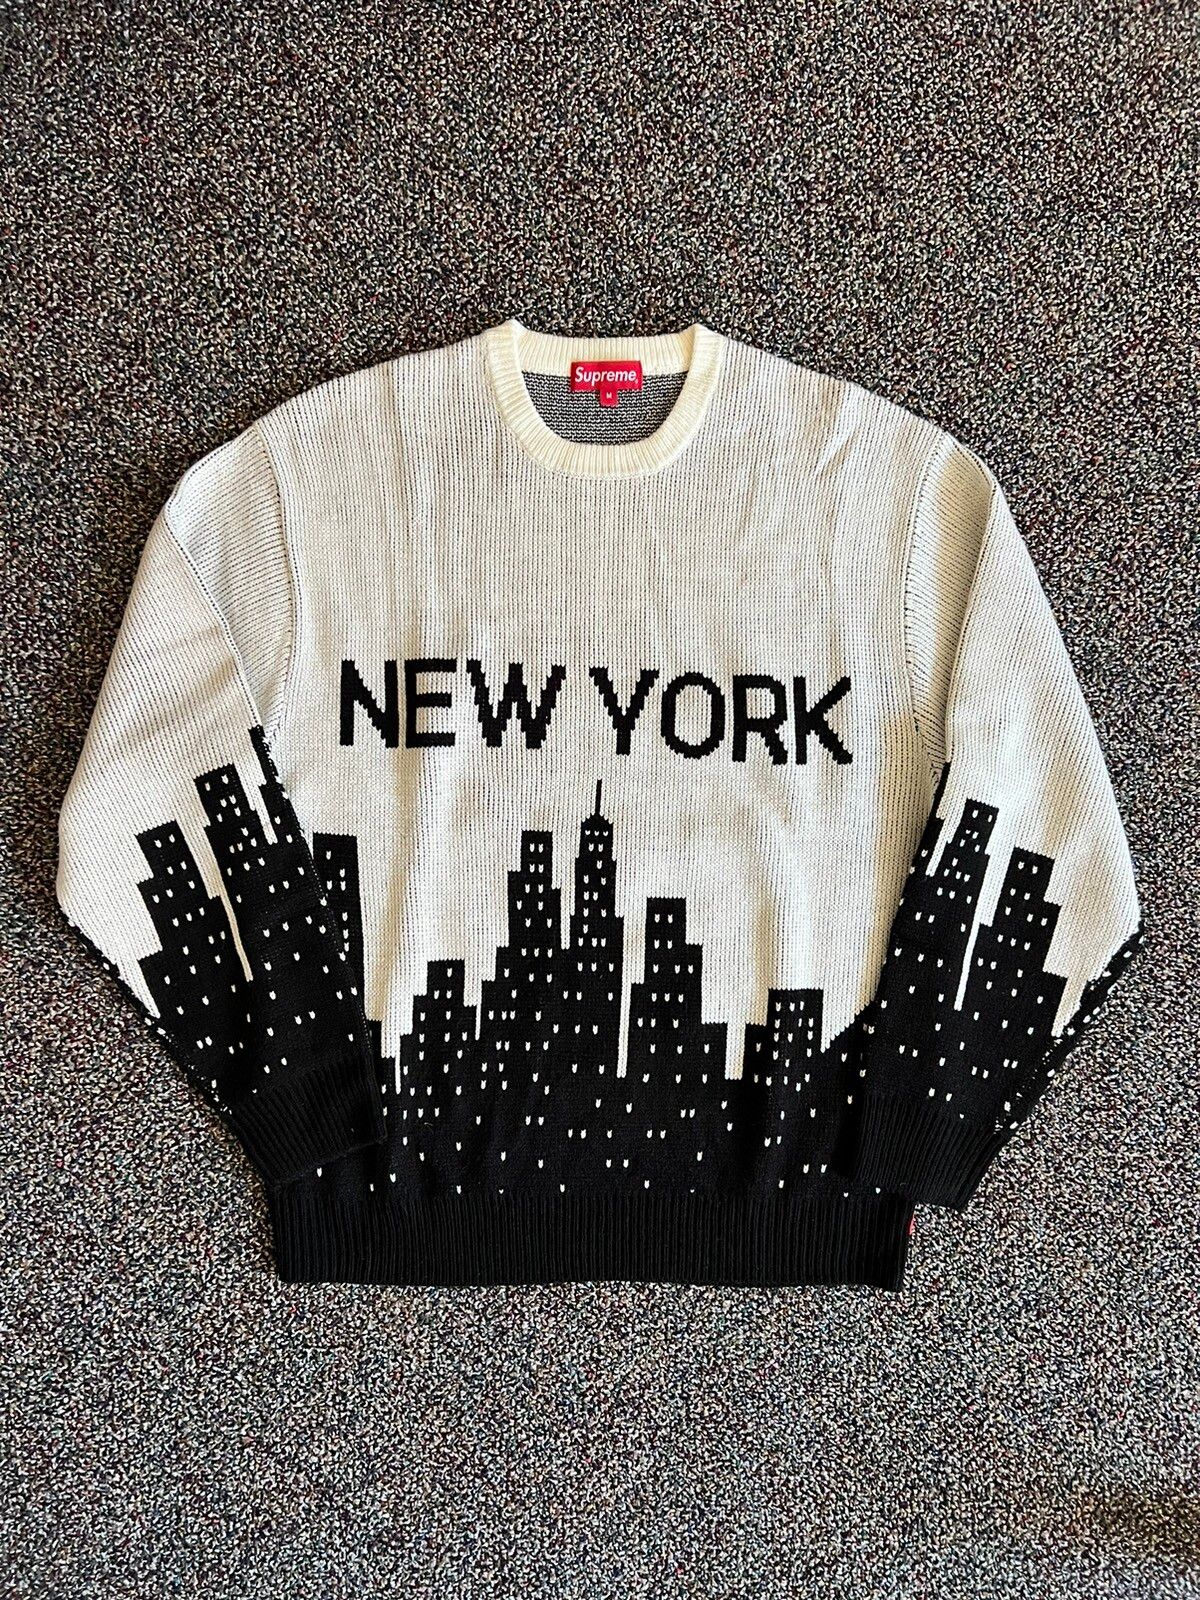 上質風合い 966 New 7799 Supreme 212 New York spring Sweater メンズ